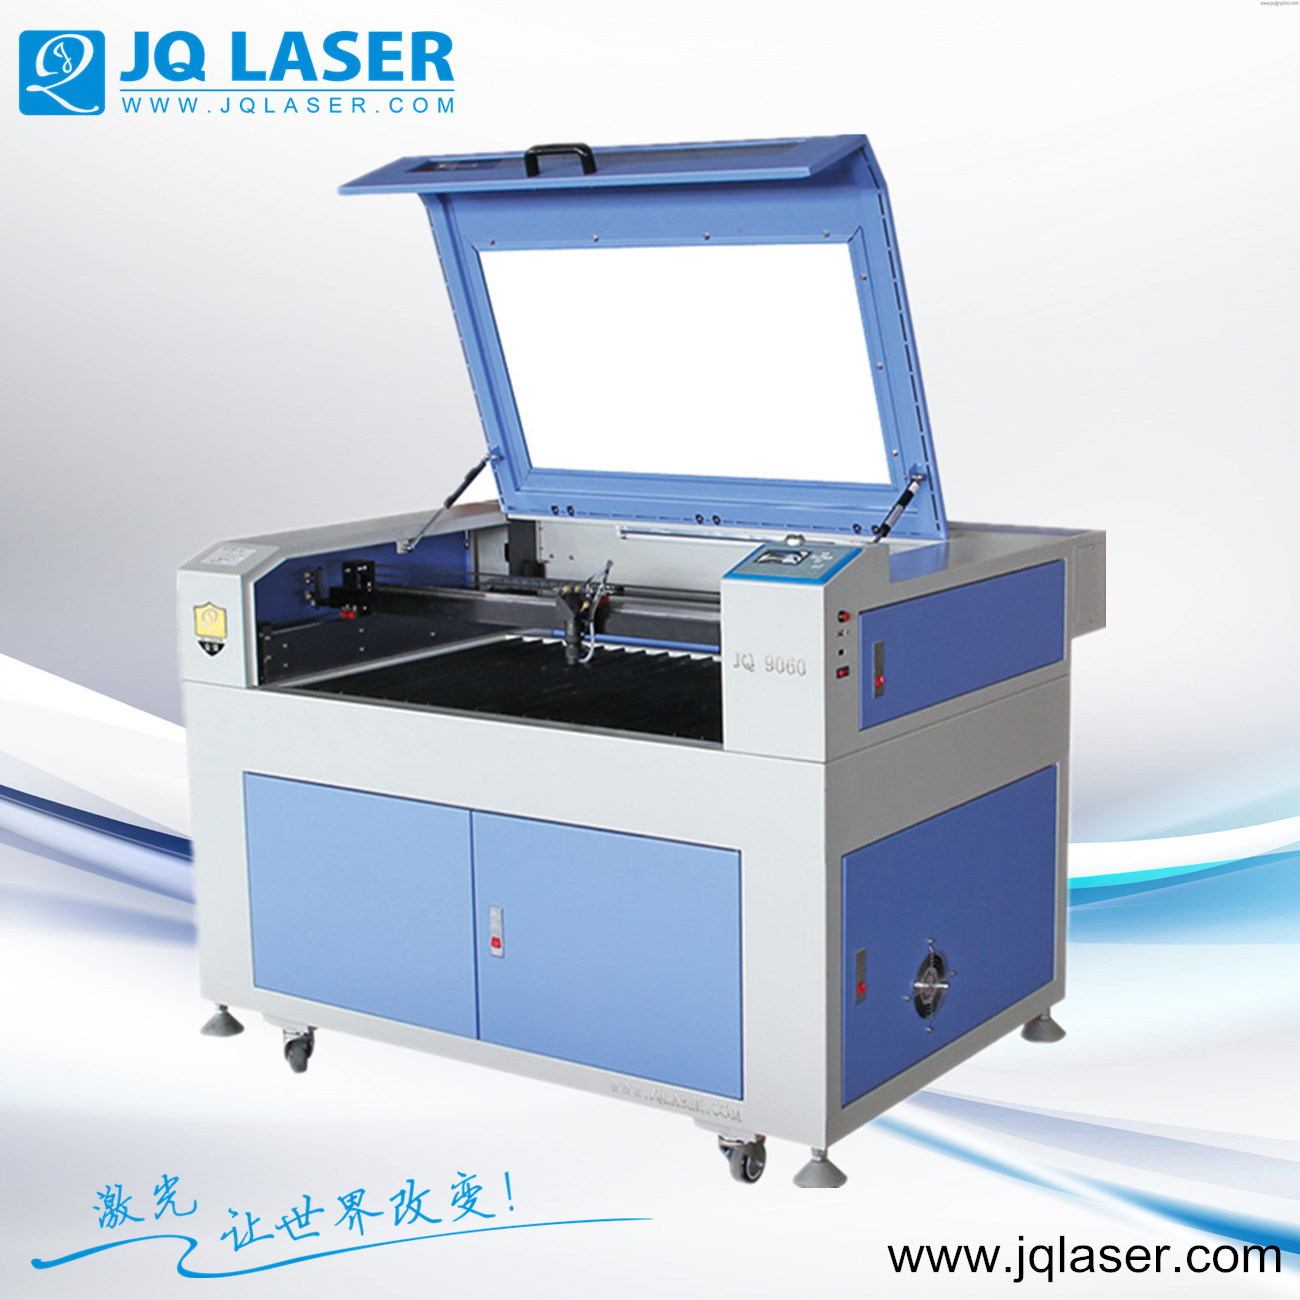 Laser Cutting Machine/Laser Engraving Machine